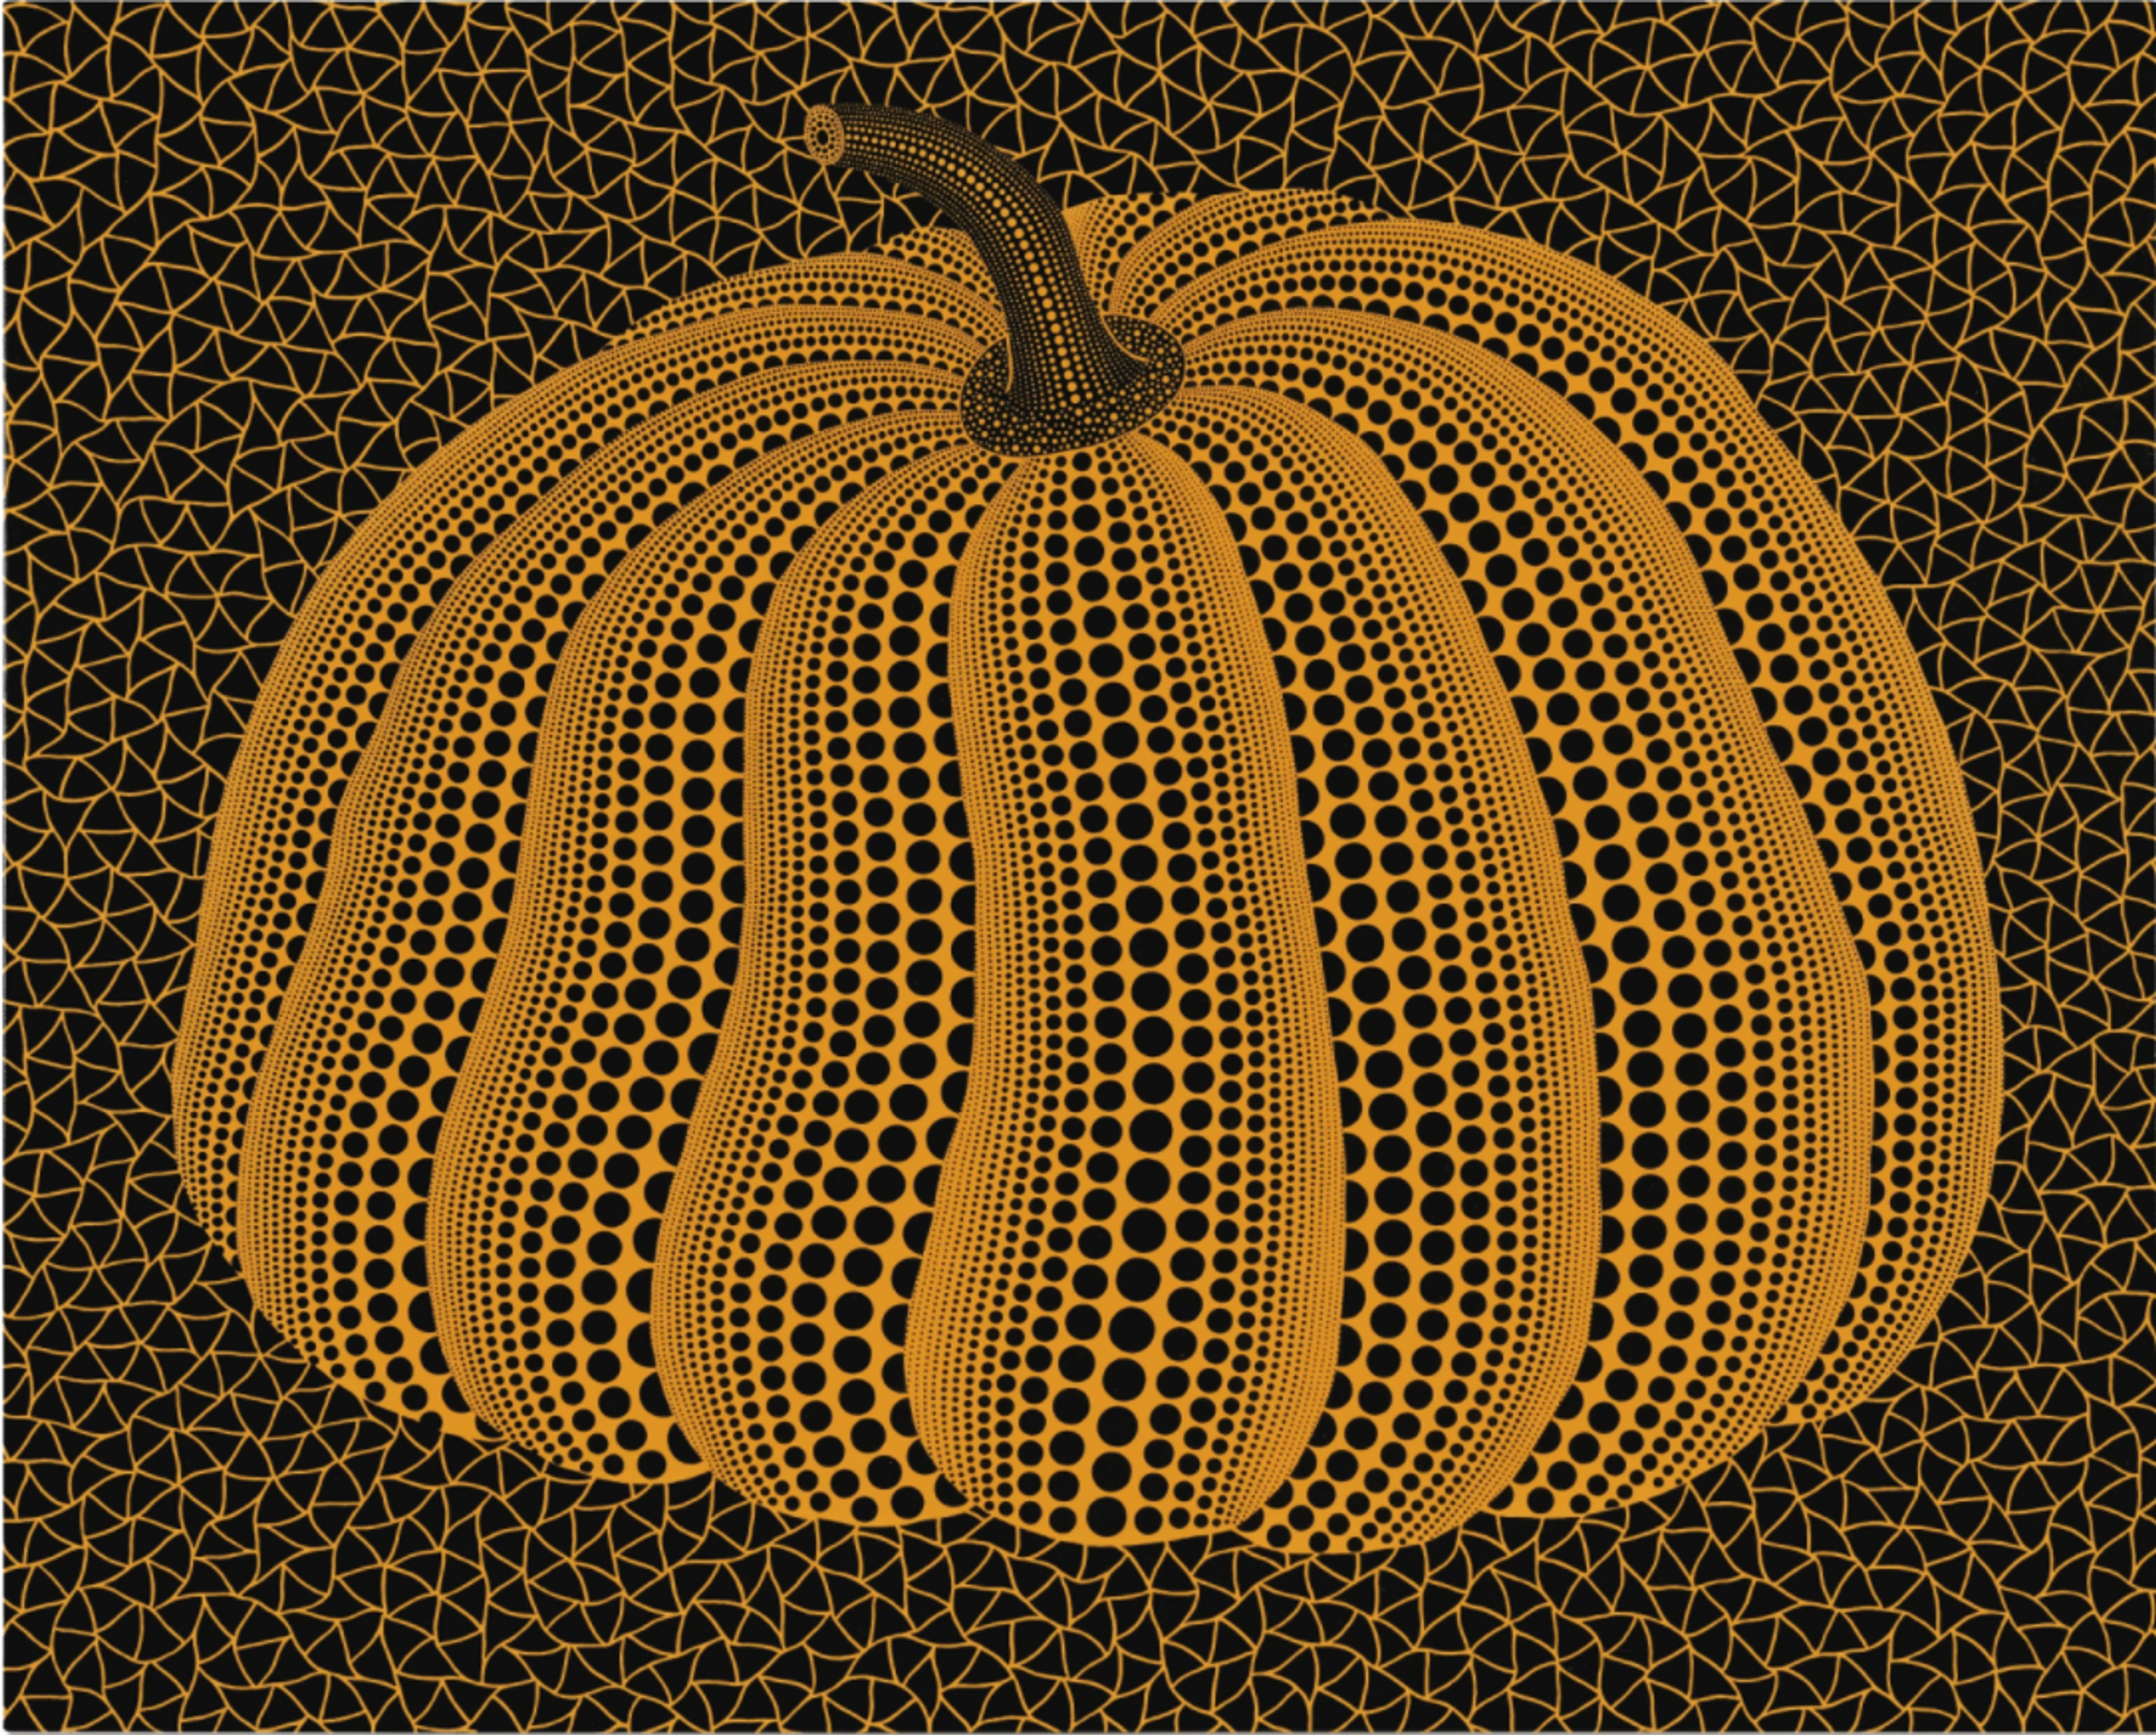 Pumpkin (Twpot) by Yayoi Kusama